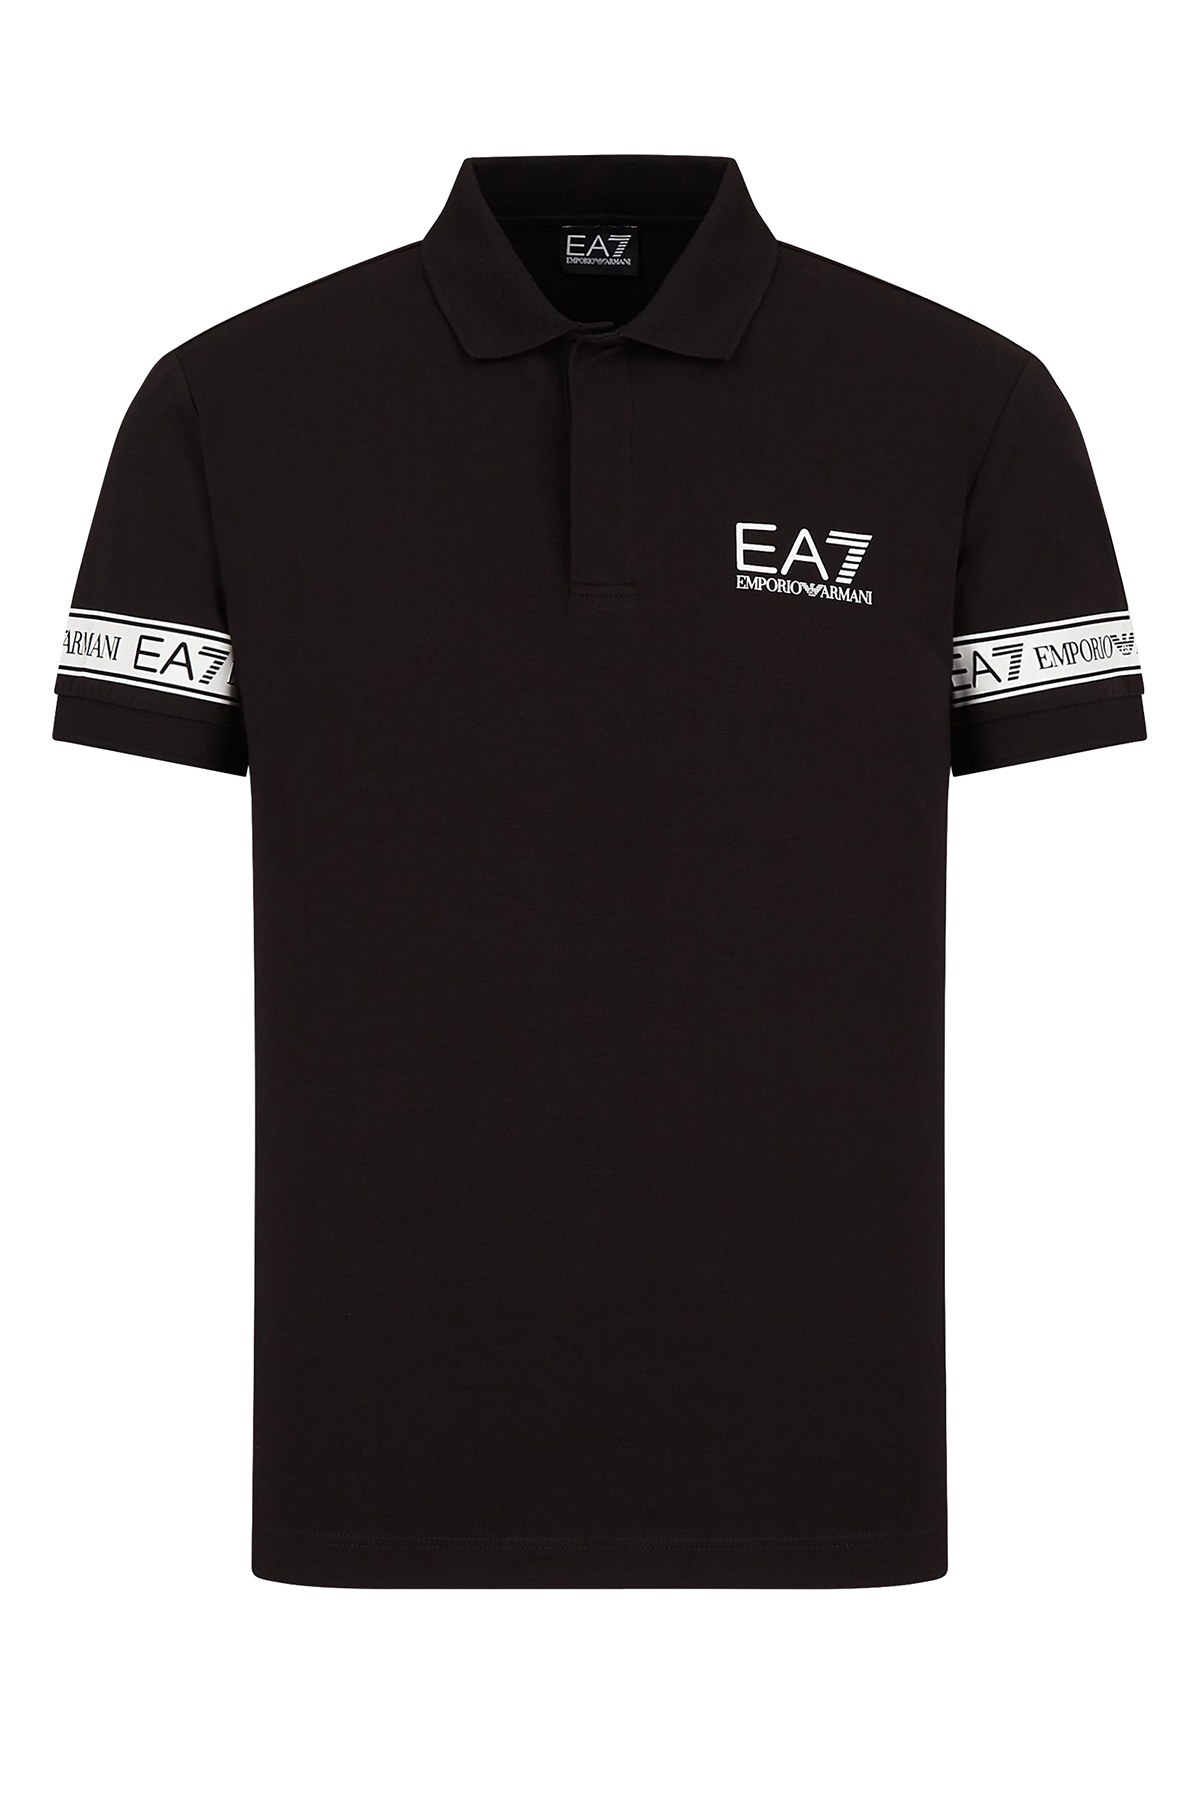 EA7 Logo Baskılı Pamuklu T Shirt Erkek Polo 3KPF04 PJ03Z 1200 SİYAH